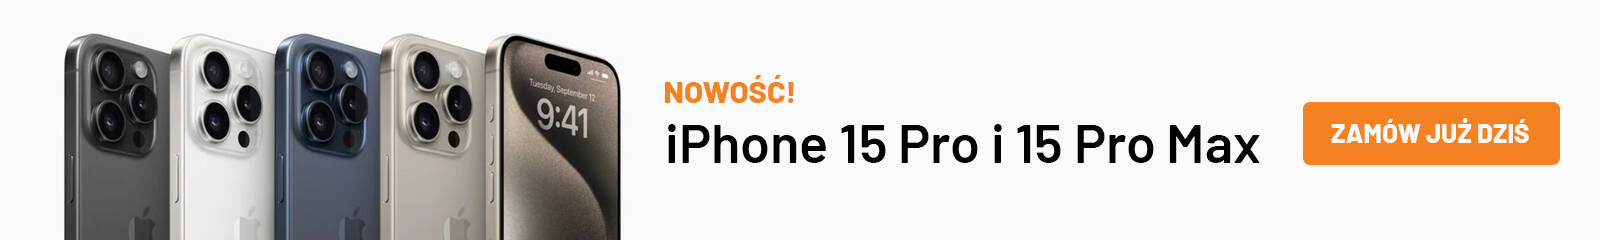 Przedsprzedaż iPhone 15 Pro